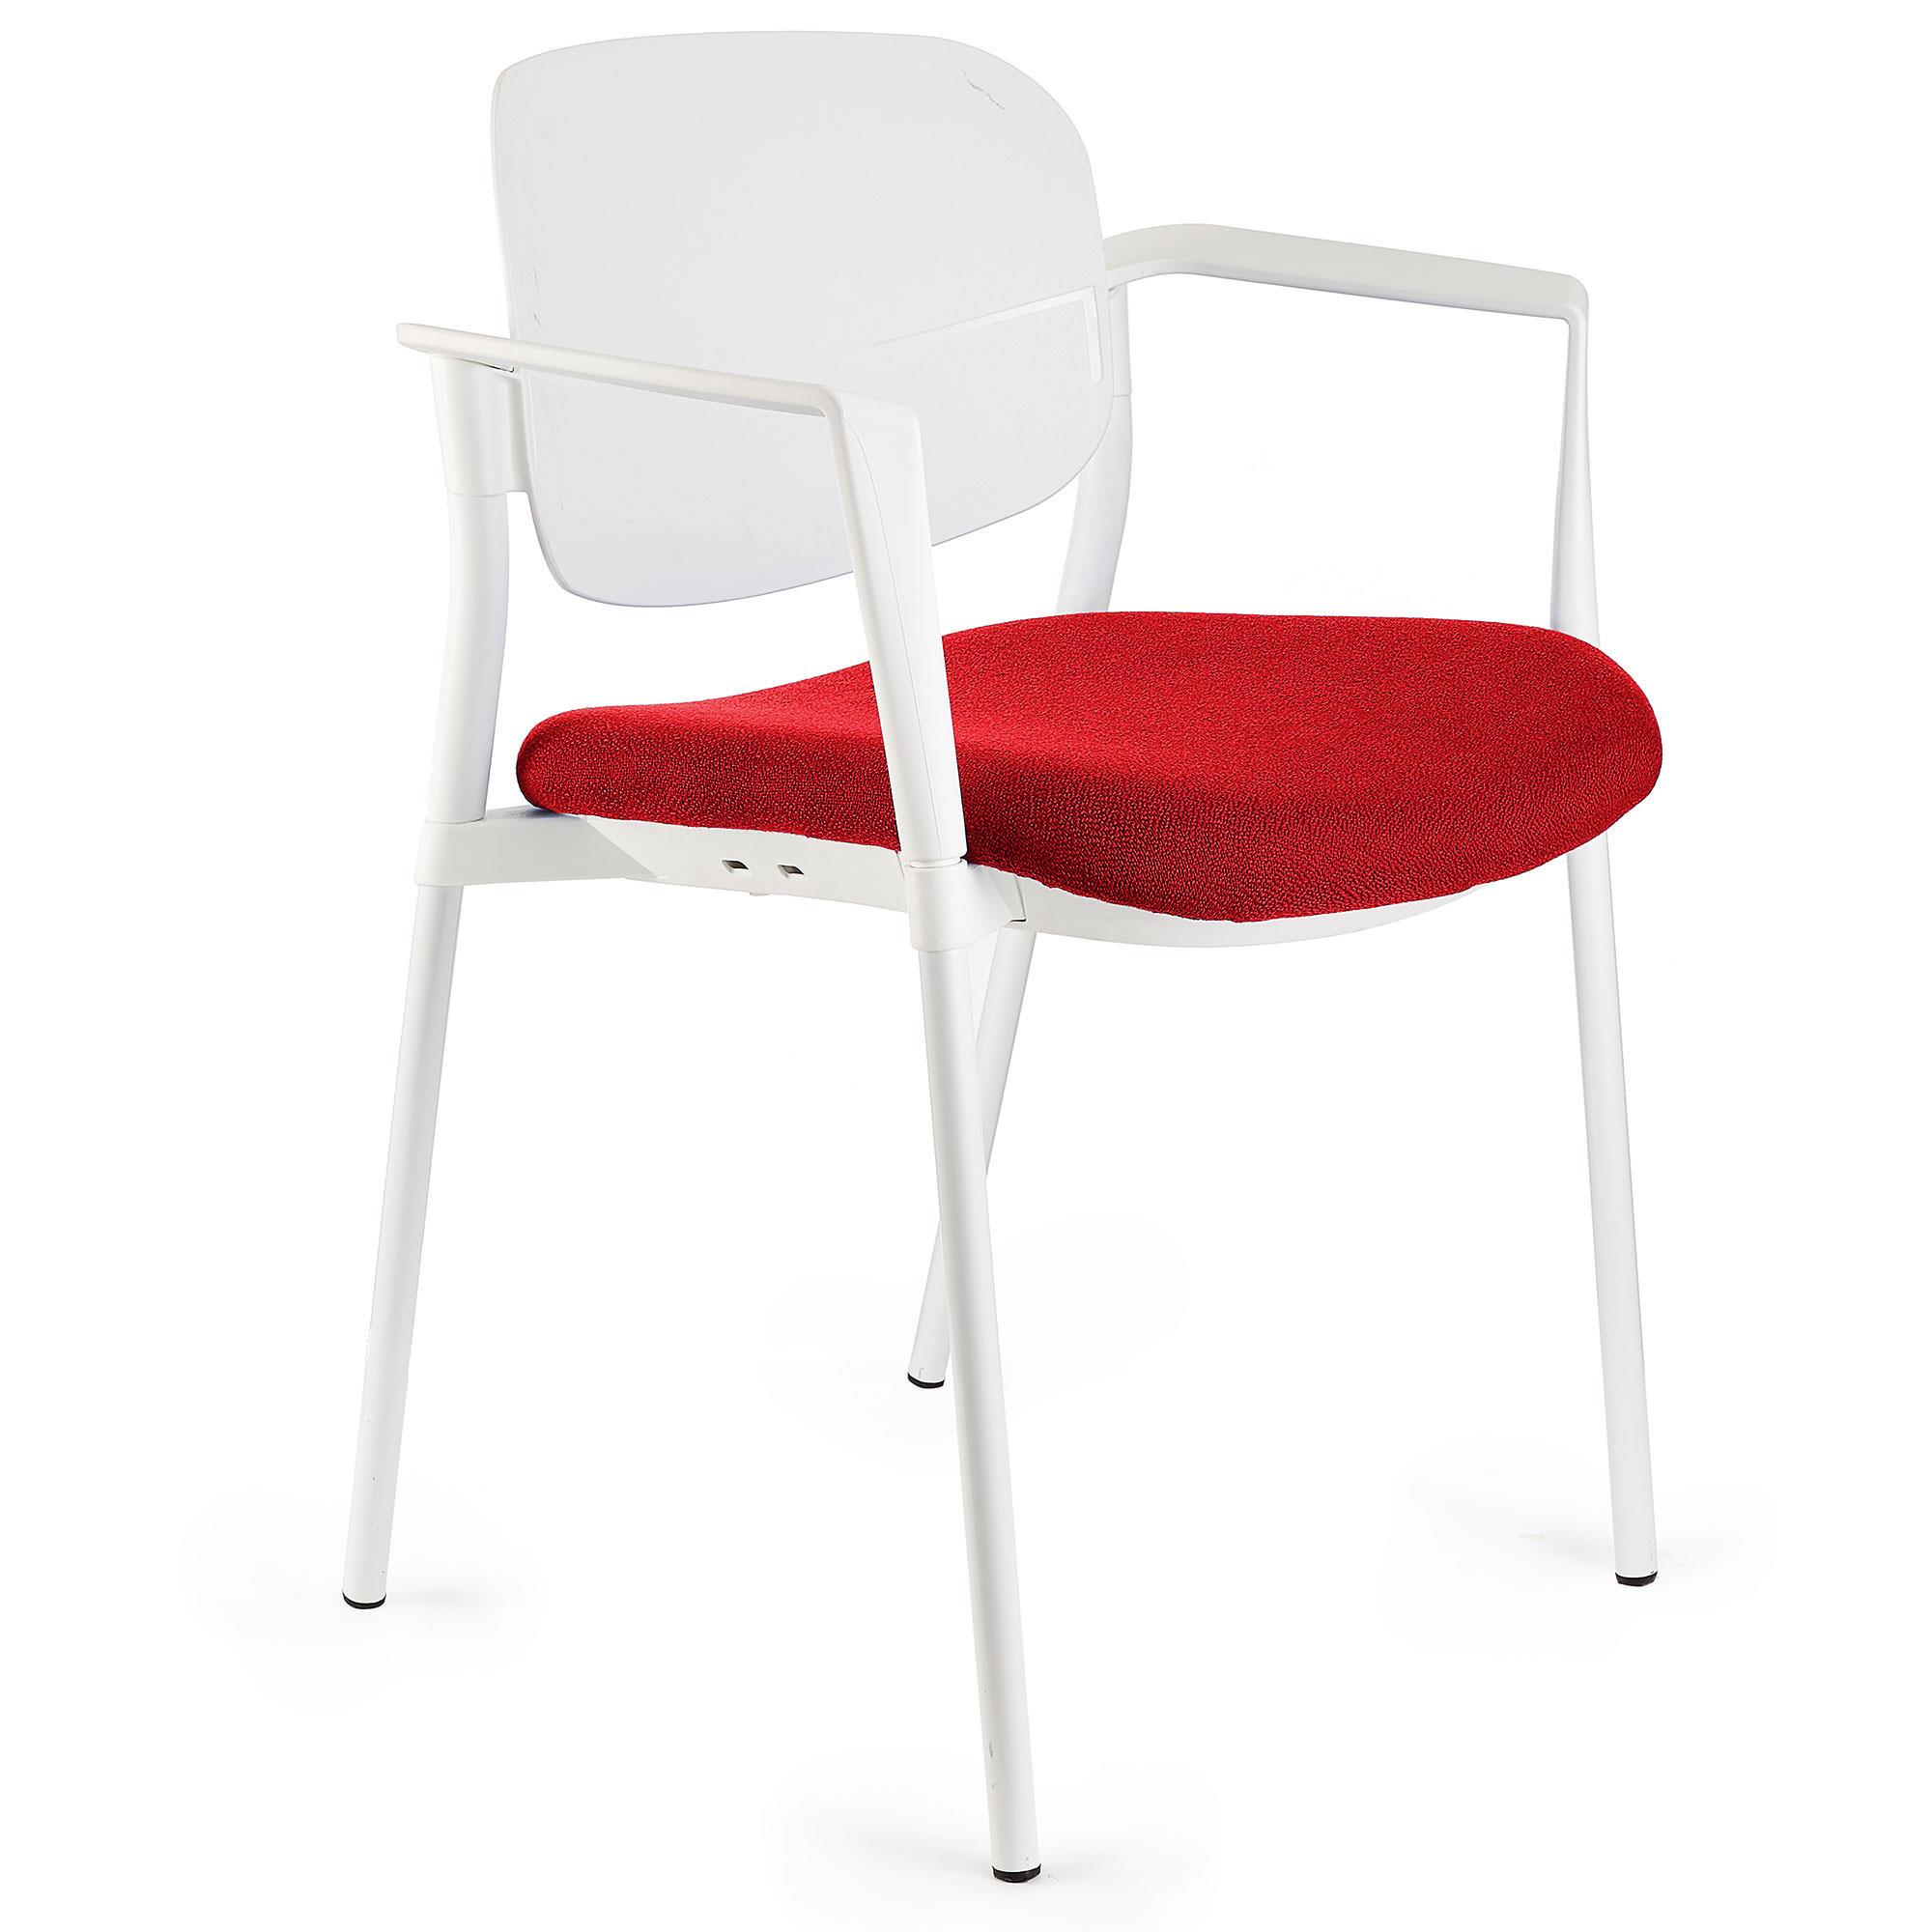 Konferenzstuhl ERIC, bequem und praktisch, stapelbar, Farbe Rot